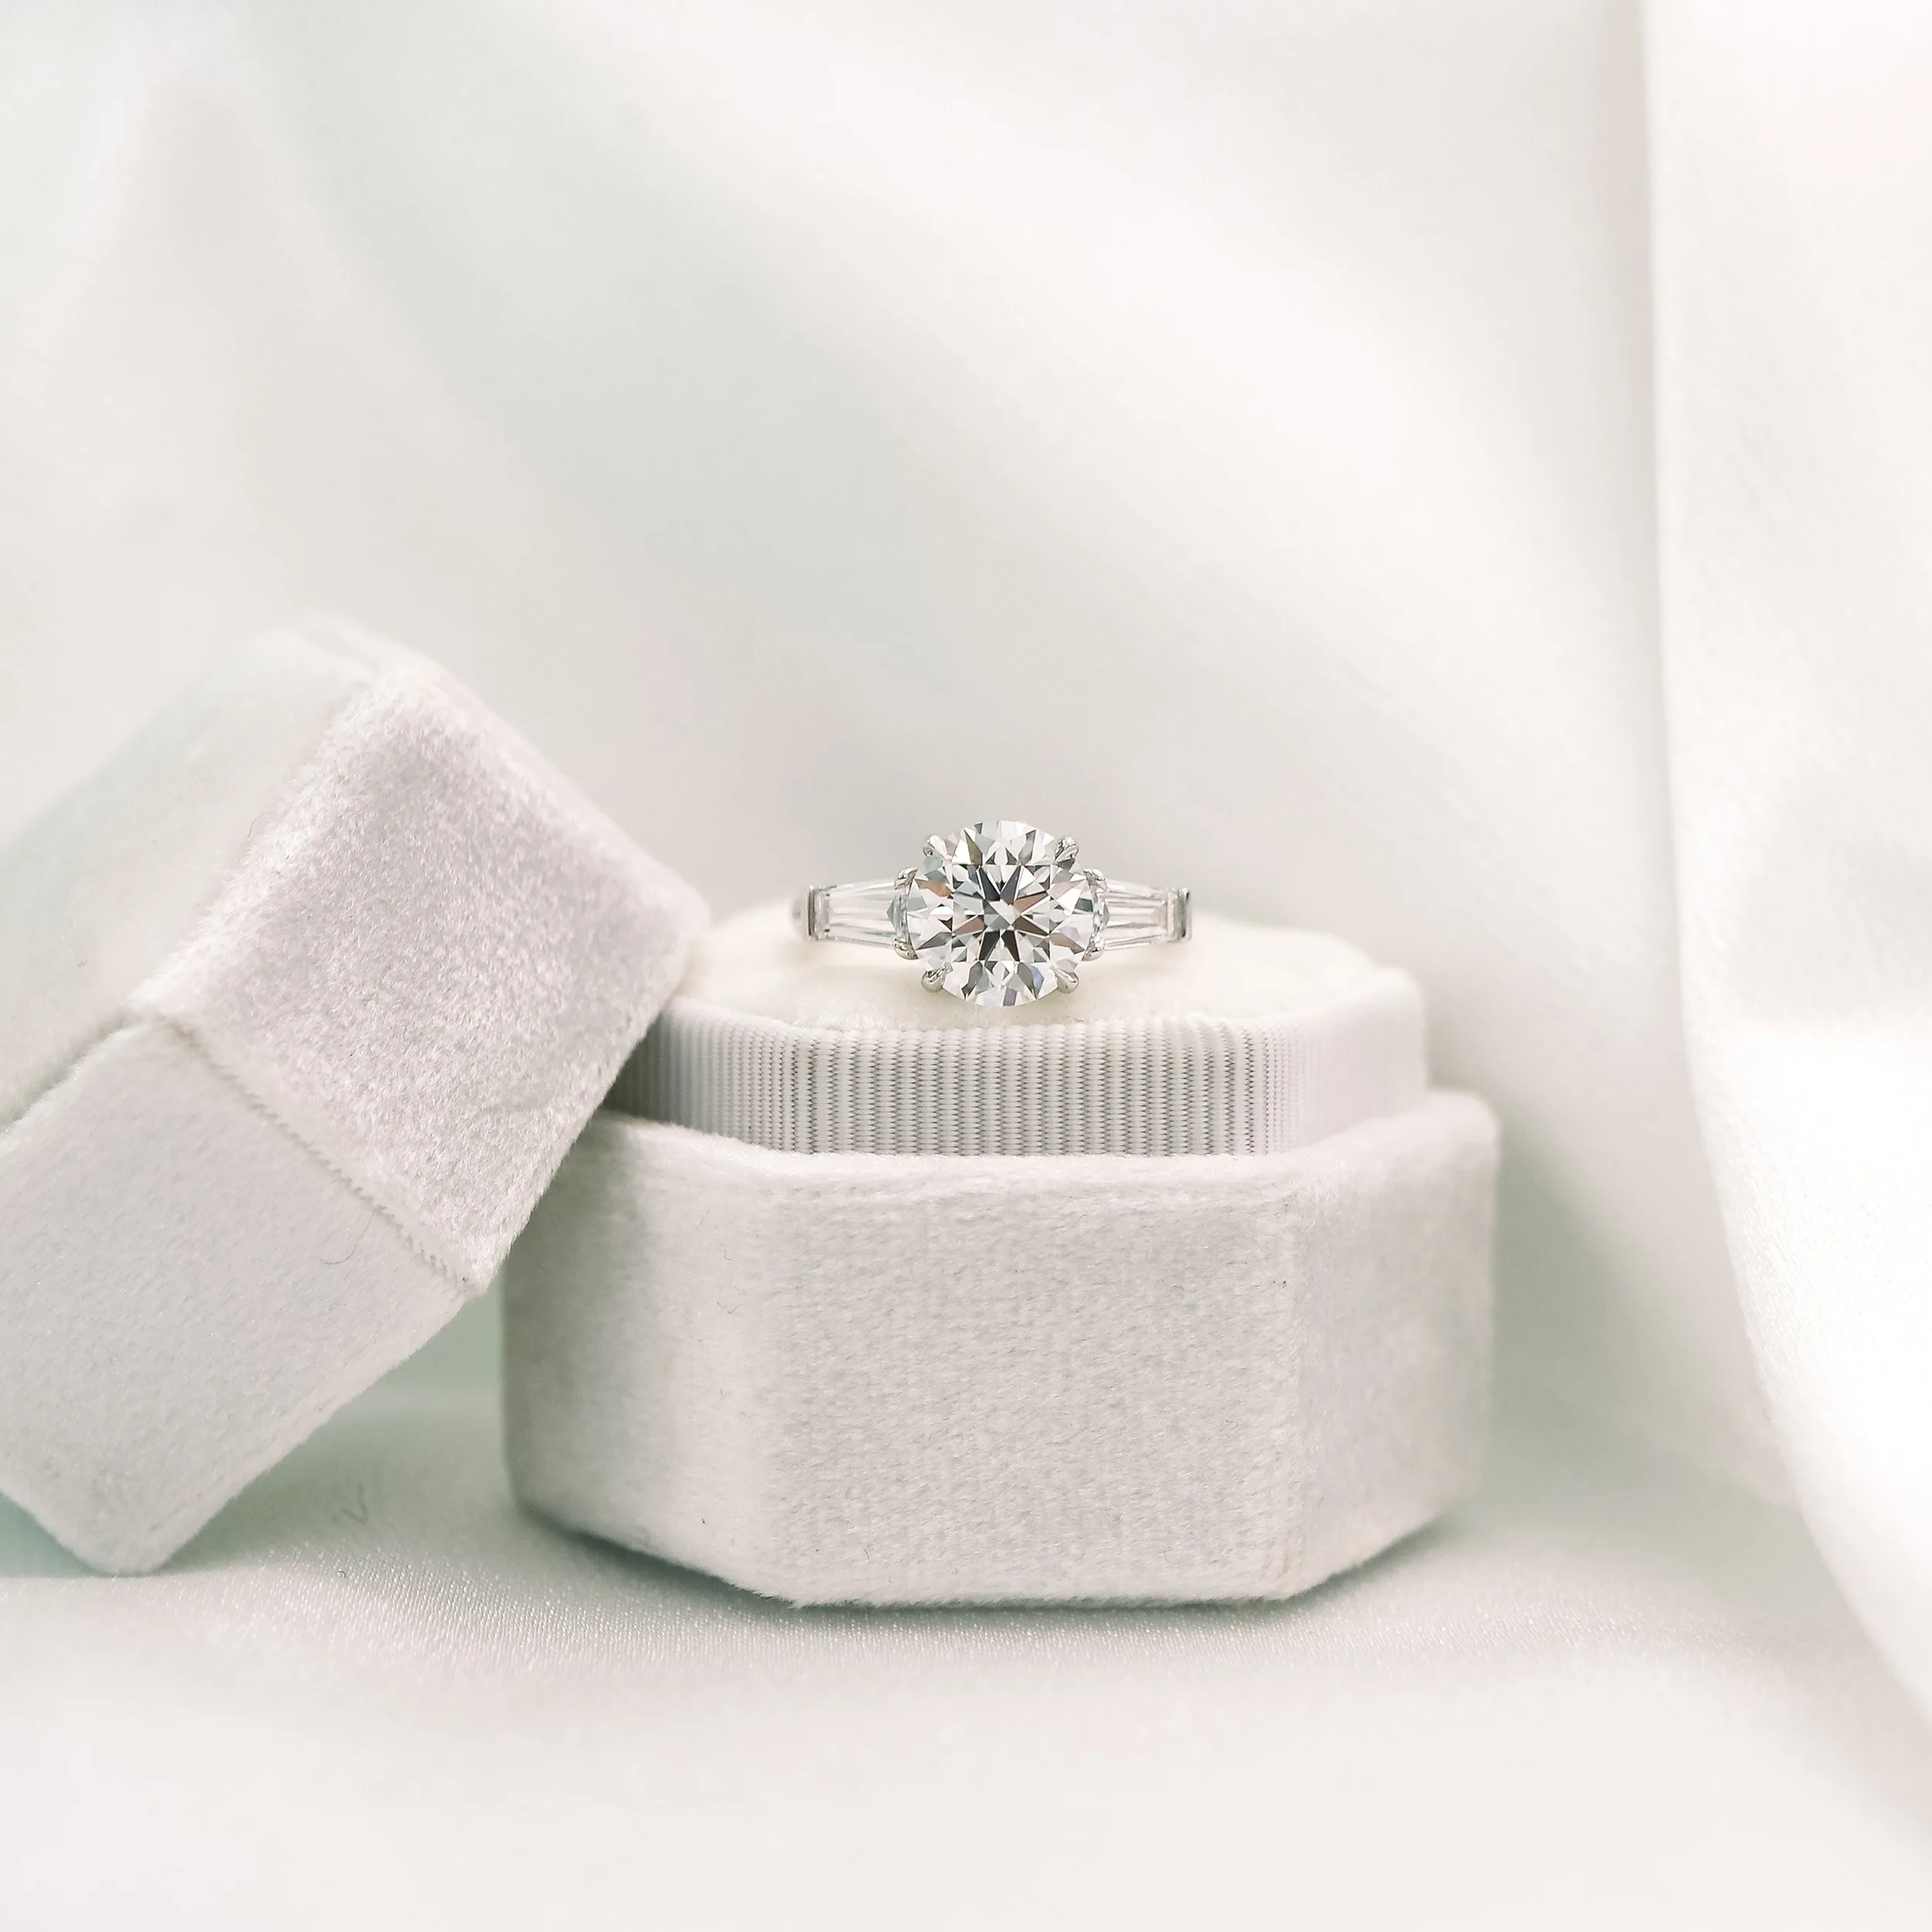 platinum 3 ct round and baguette lab diamond three stone engagement ring ada diamonds design ad 071 macro